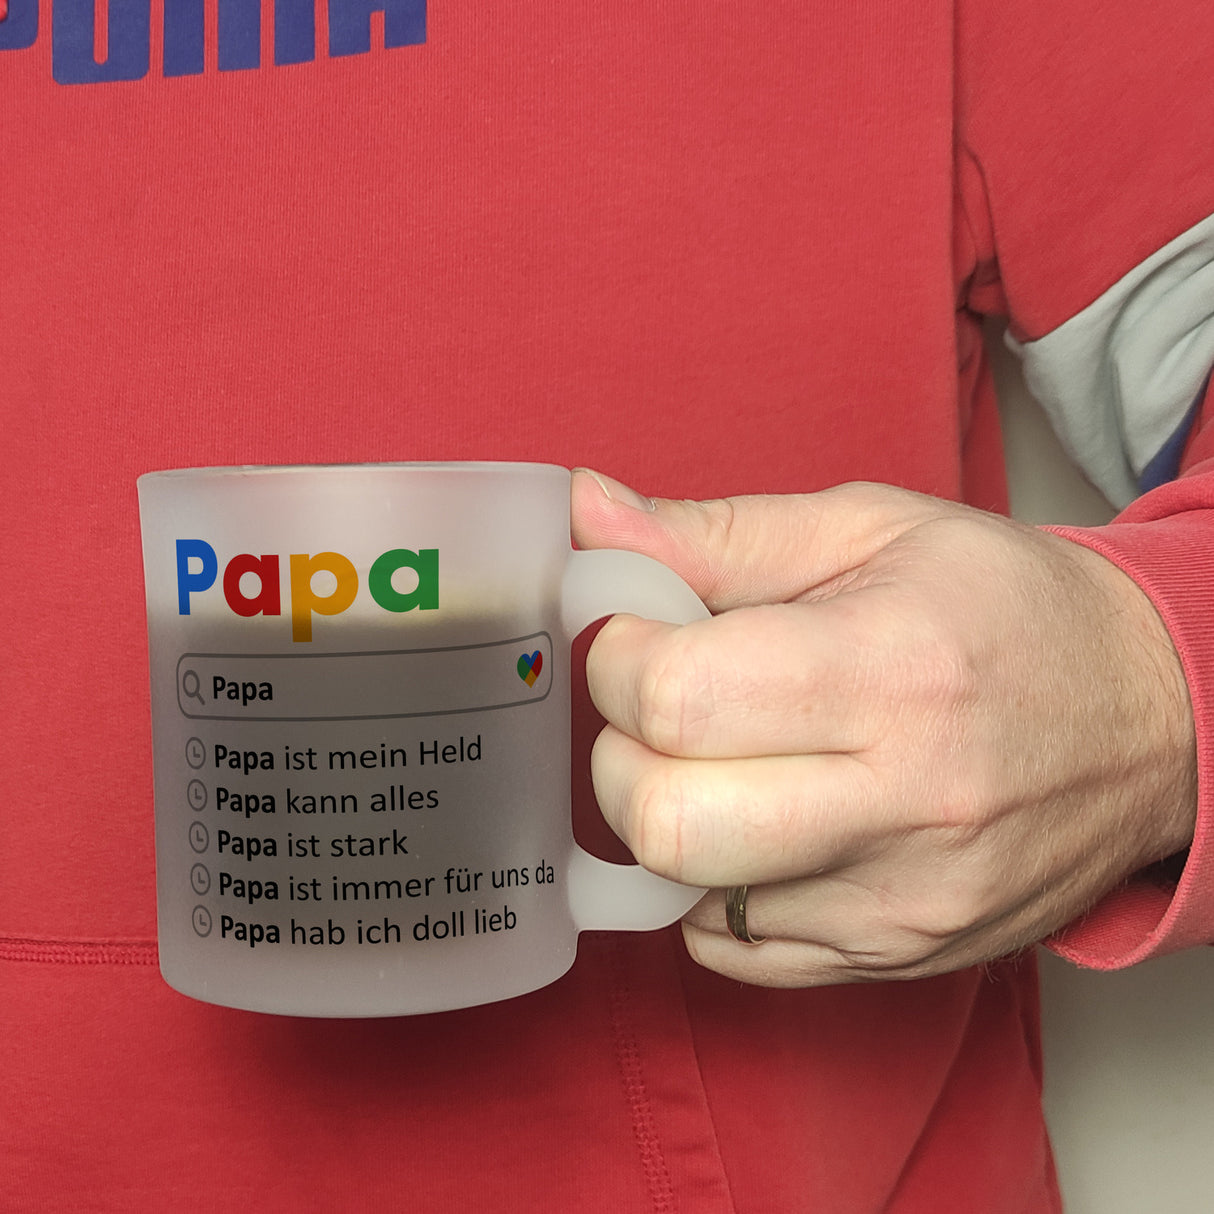 Papa ist mein Held Suchmaschine Kaffeebecher